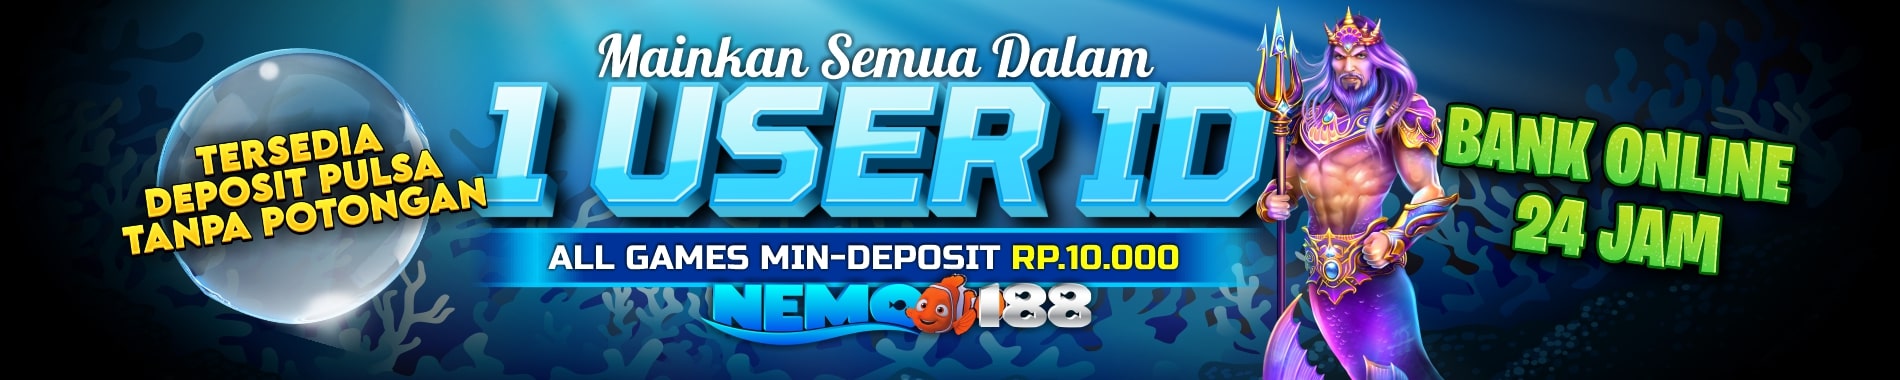 welcome to Nemo188 Situs Betting Online Mudah Maxwin